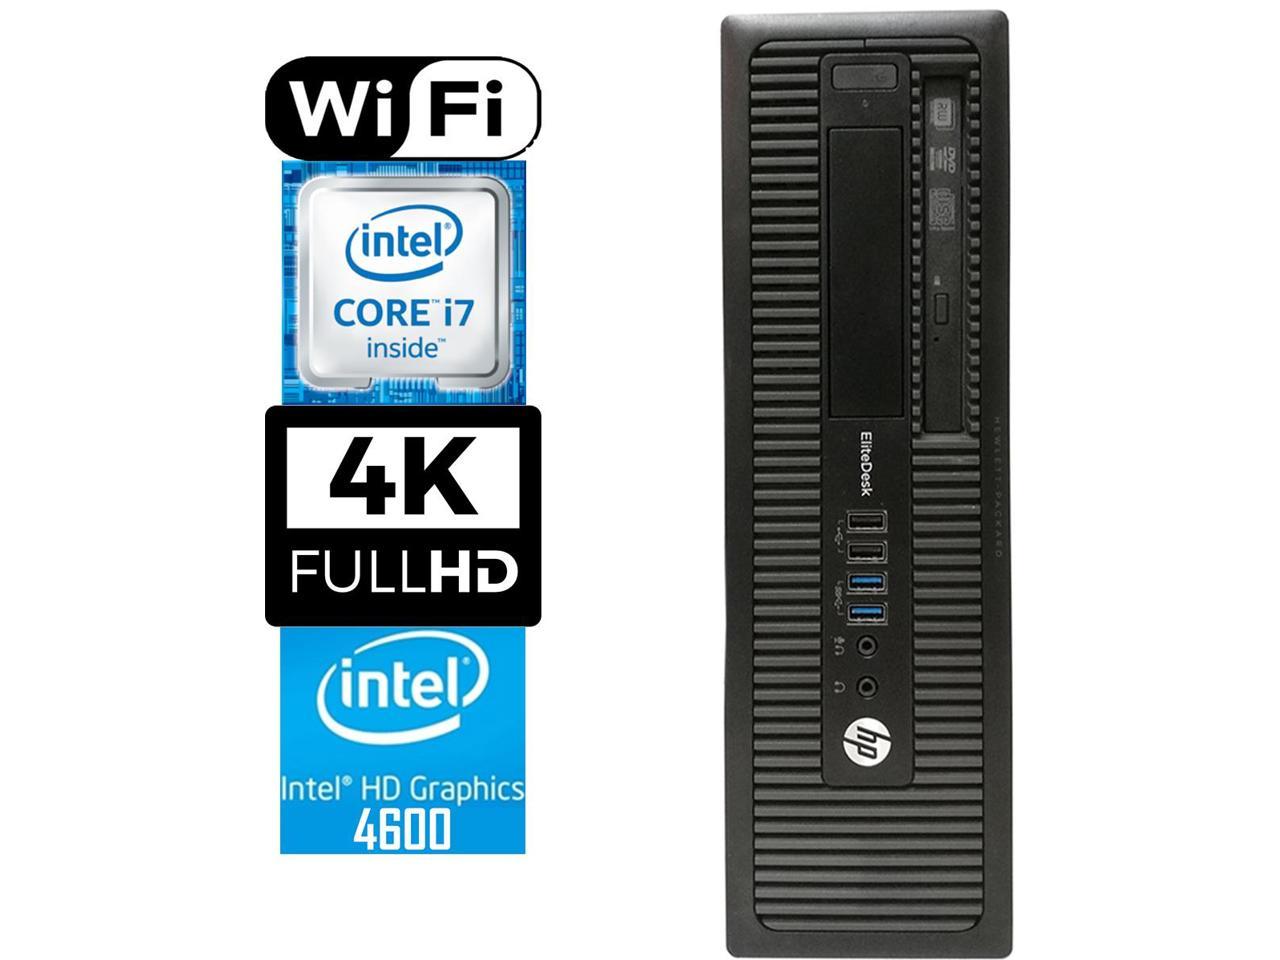 HP 800 G1 SFF Desktop Workstation, Quad-Core i7 4770 3.4, 16GB RAM, 256GB SSD, Intel HD Graphics 4600 4K 3-Monitor Support, USB 3, WiFi, Windows 10 Pro, Bluetooth, HDMI